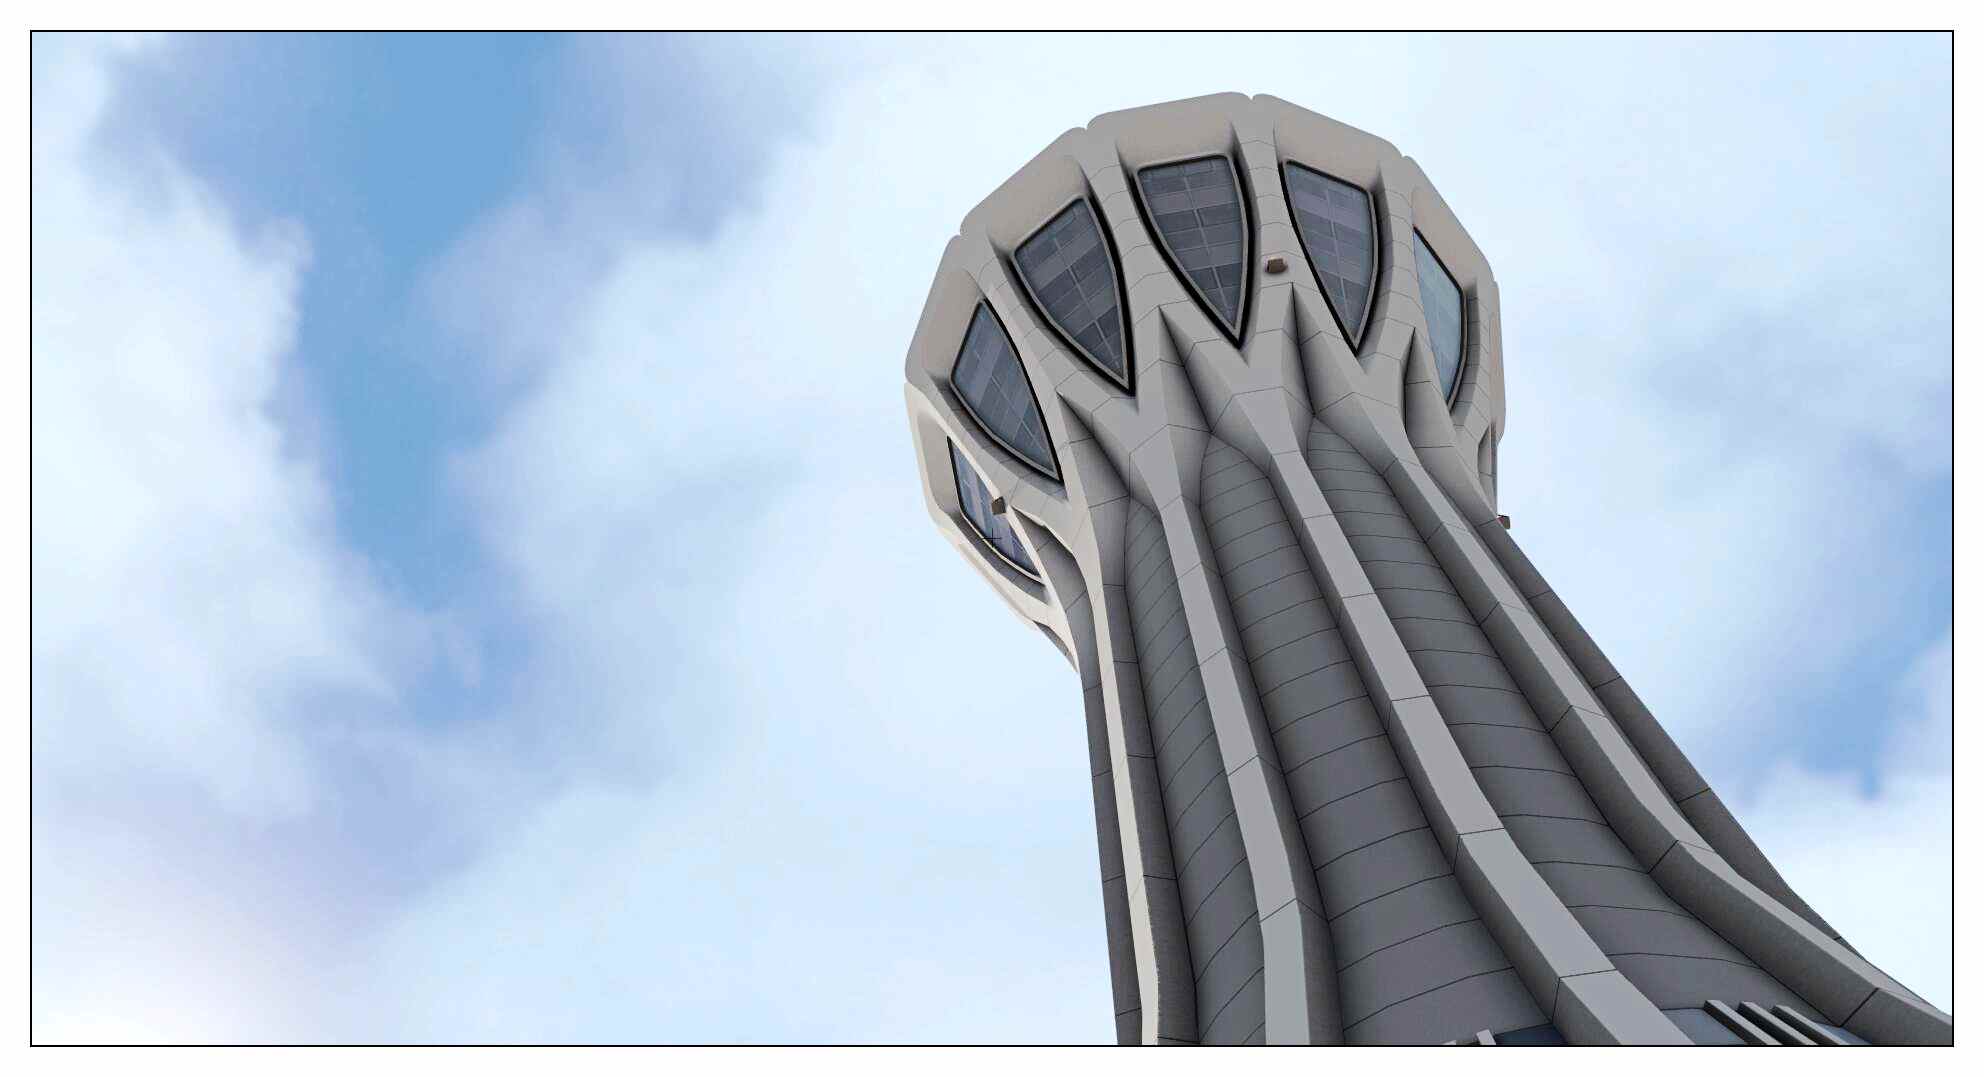 【X-Plane】ZBAD北京大兴国际机场-正式发布-3010 